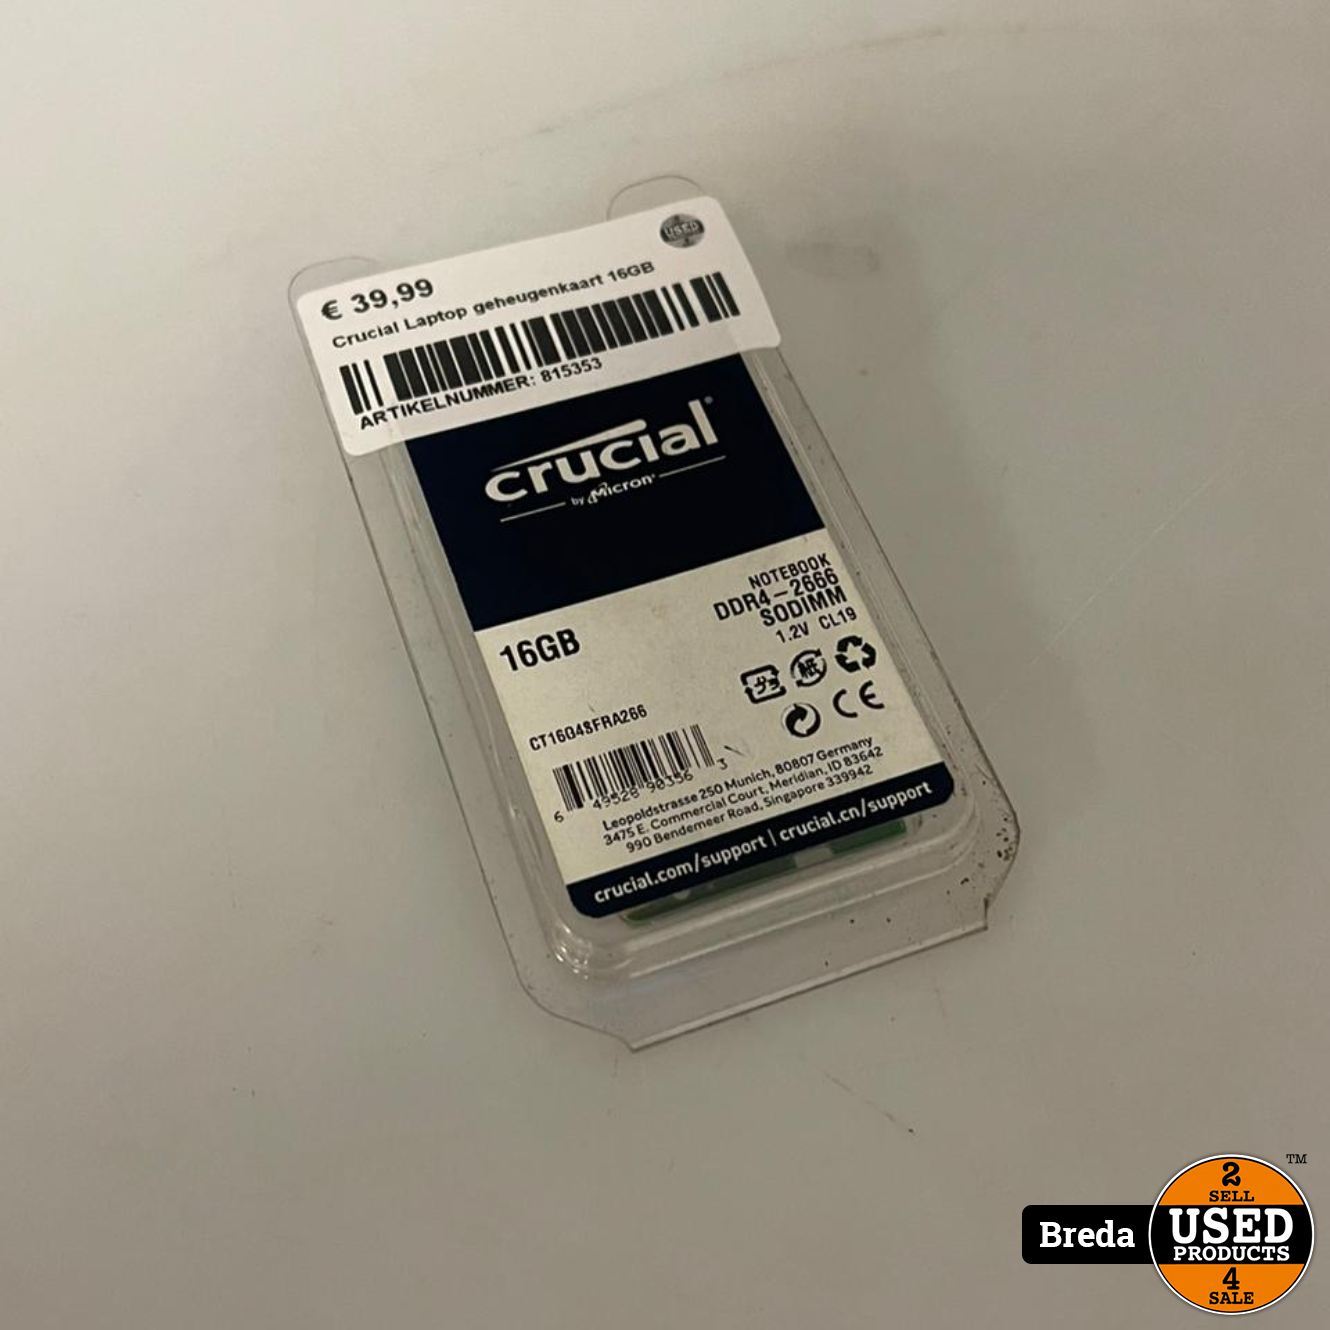 racket Mortal zijde Crucial Laptop geheugenkaart 16GB | Met garantie - Used Products Breda